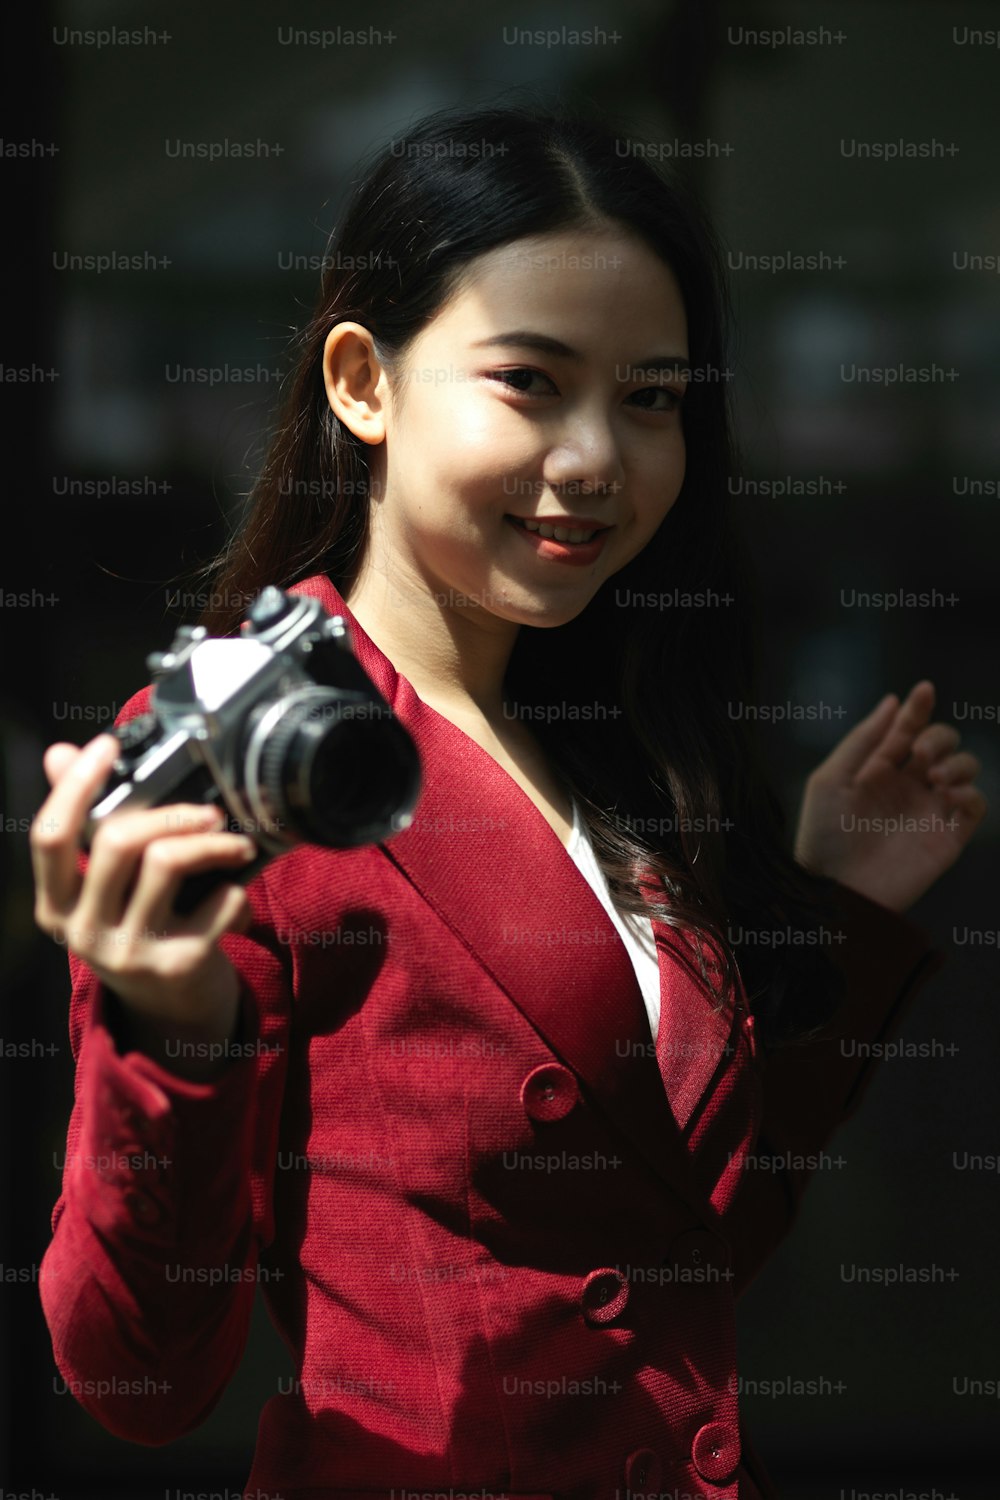 복고풍 또는 빈티지 카메라를 들고 빨간 양복을 입은 매력적인 젊은 여성 사진작가의 초상화.